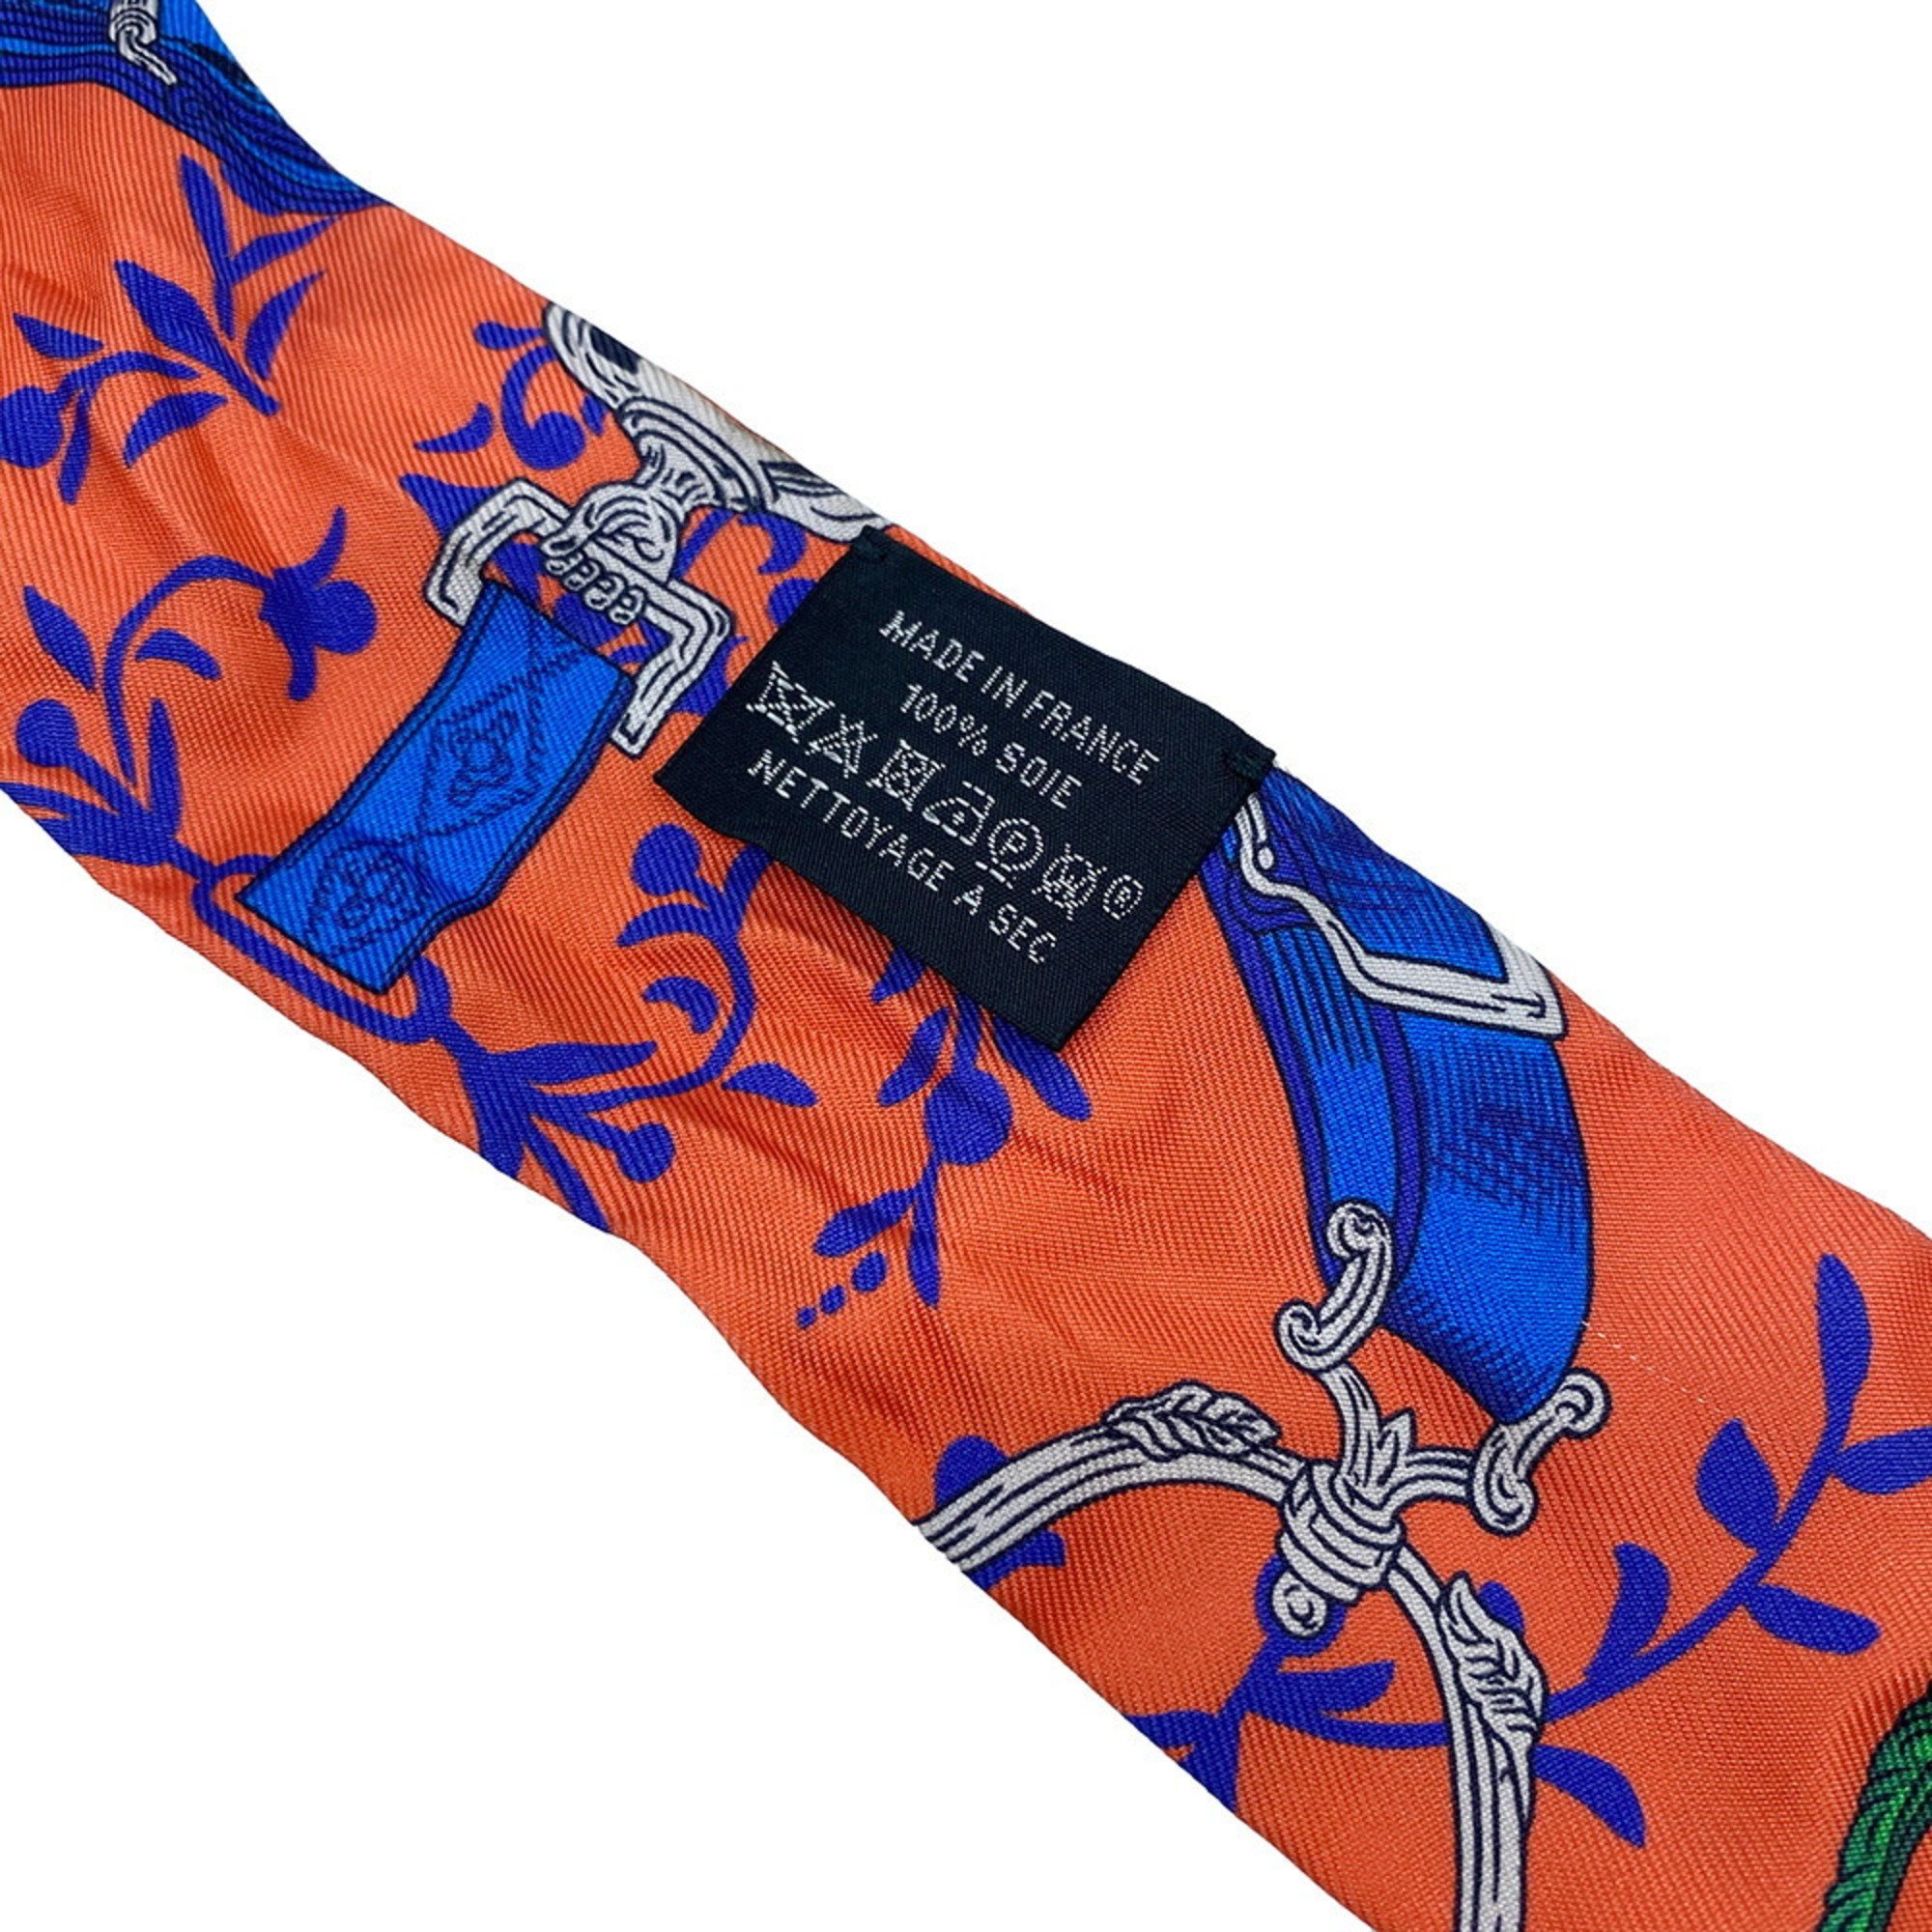 HERMES Twilly ETRIERS REMIX Blue Orange Scarf Muffler Silk Collar Accessories Bag Ladies Men's Unisex